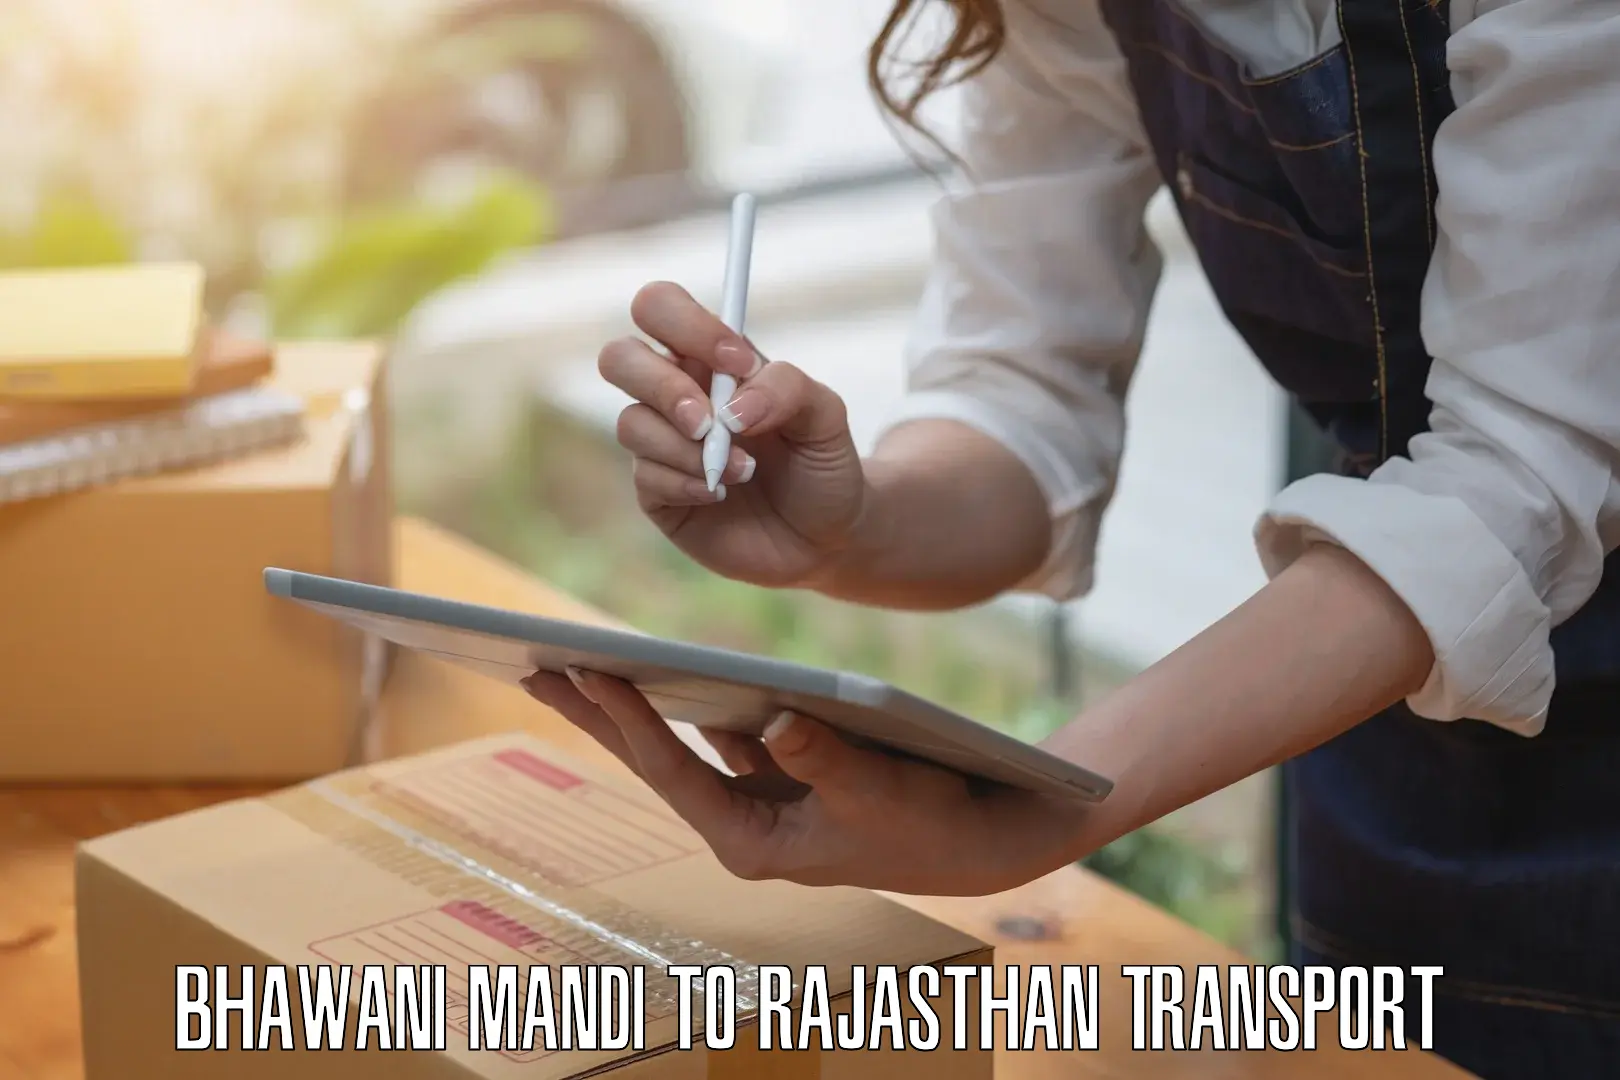 Furniture transport service Bhawani Mandi to Mathania